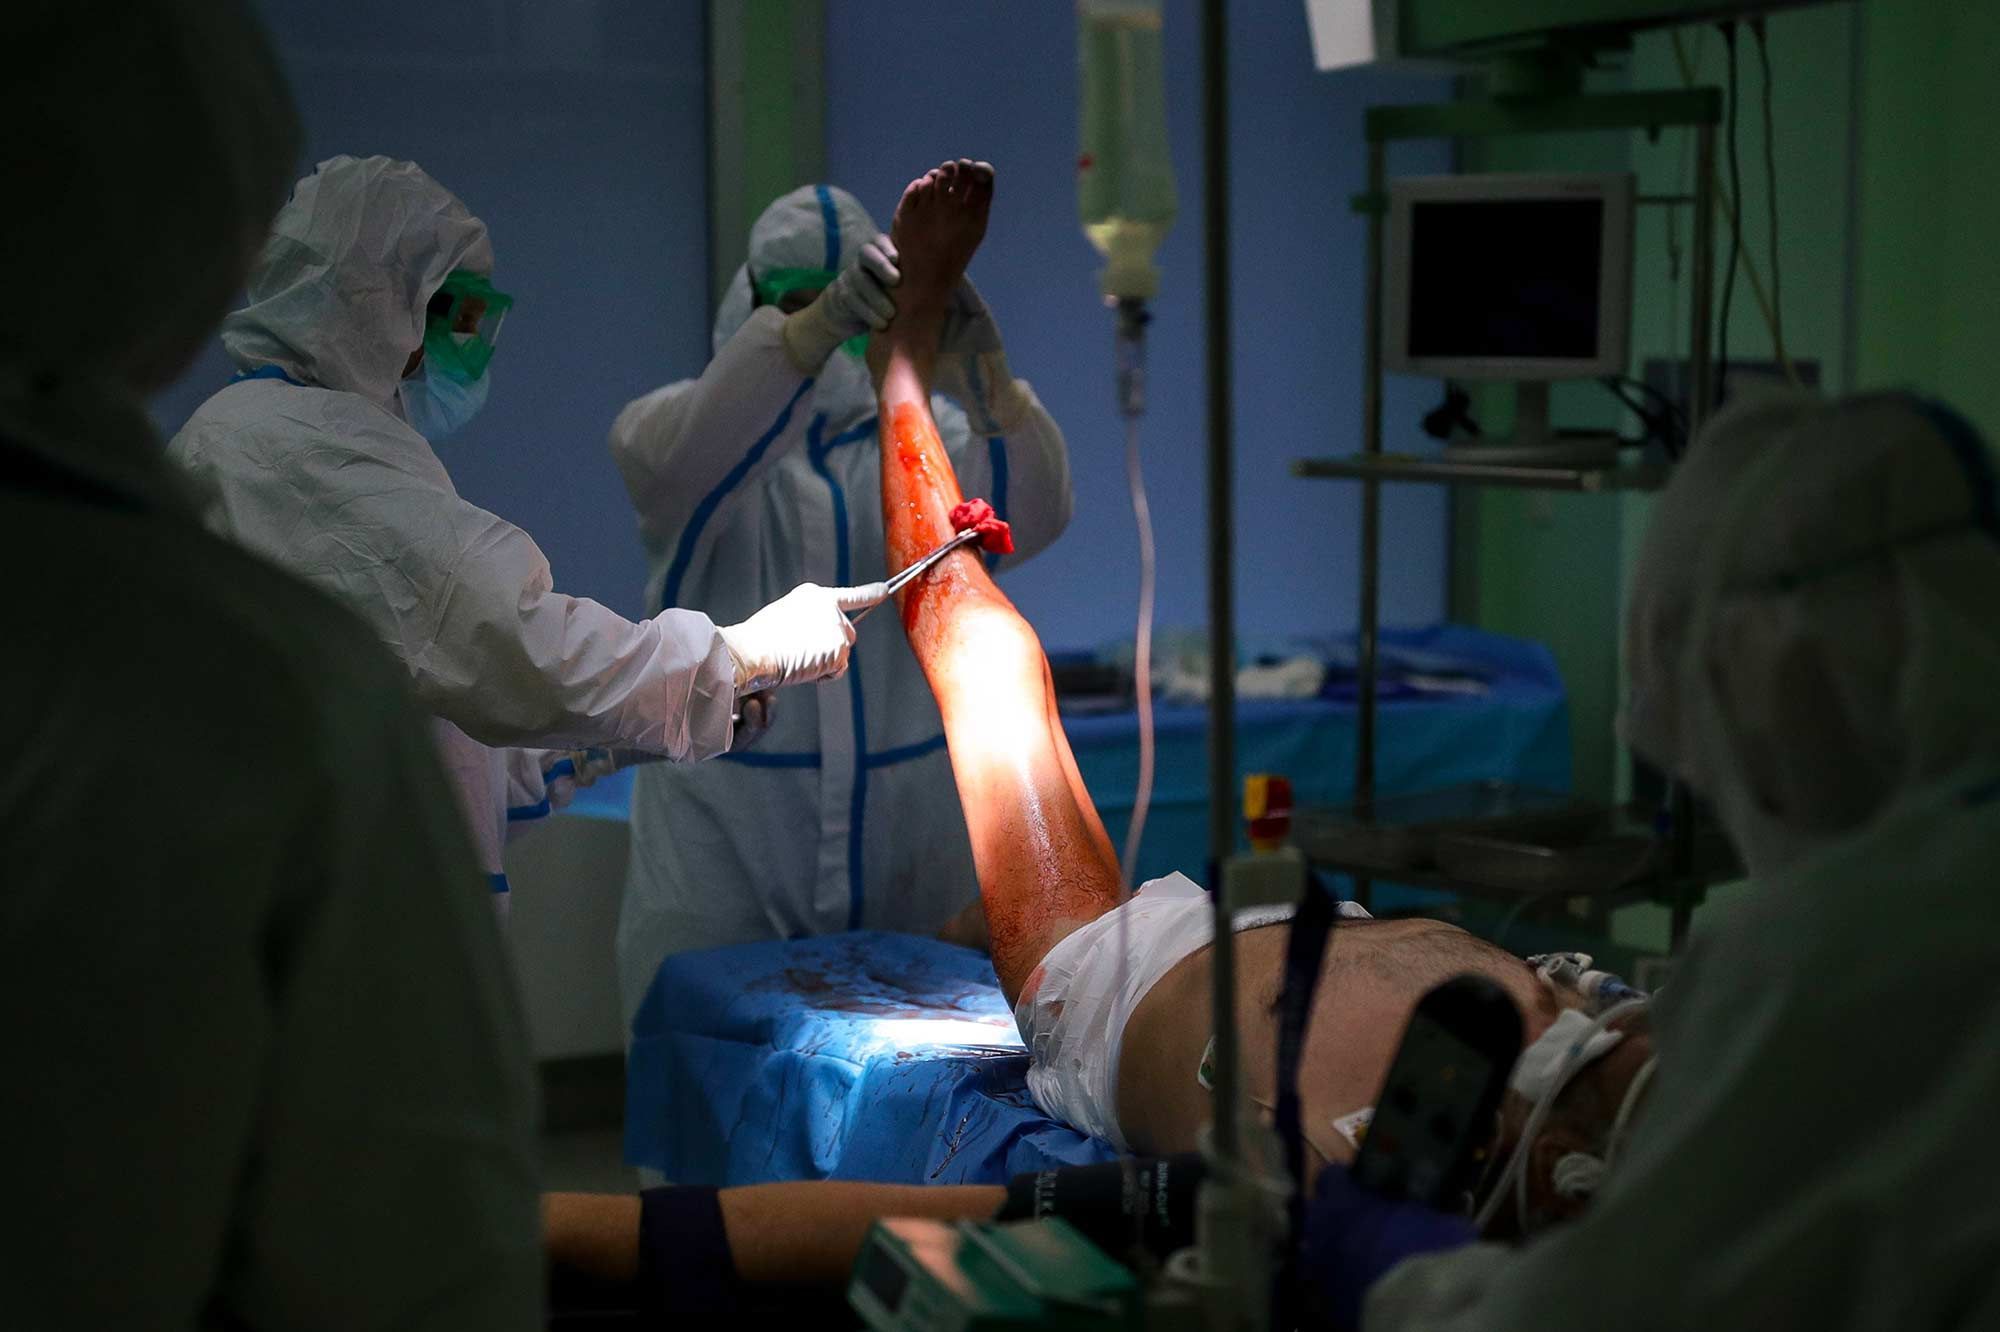 une chirurgienne autrichienne condamnee pour avoir ampute la mauvaise jambe